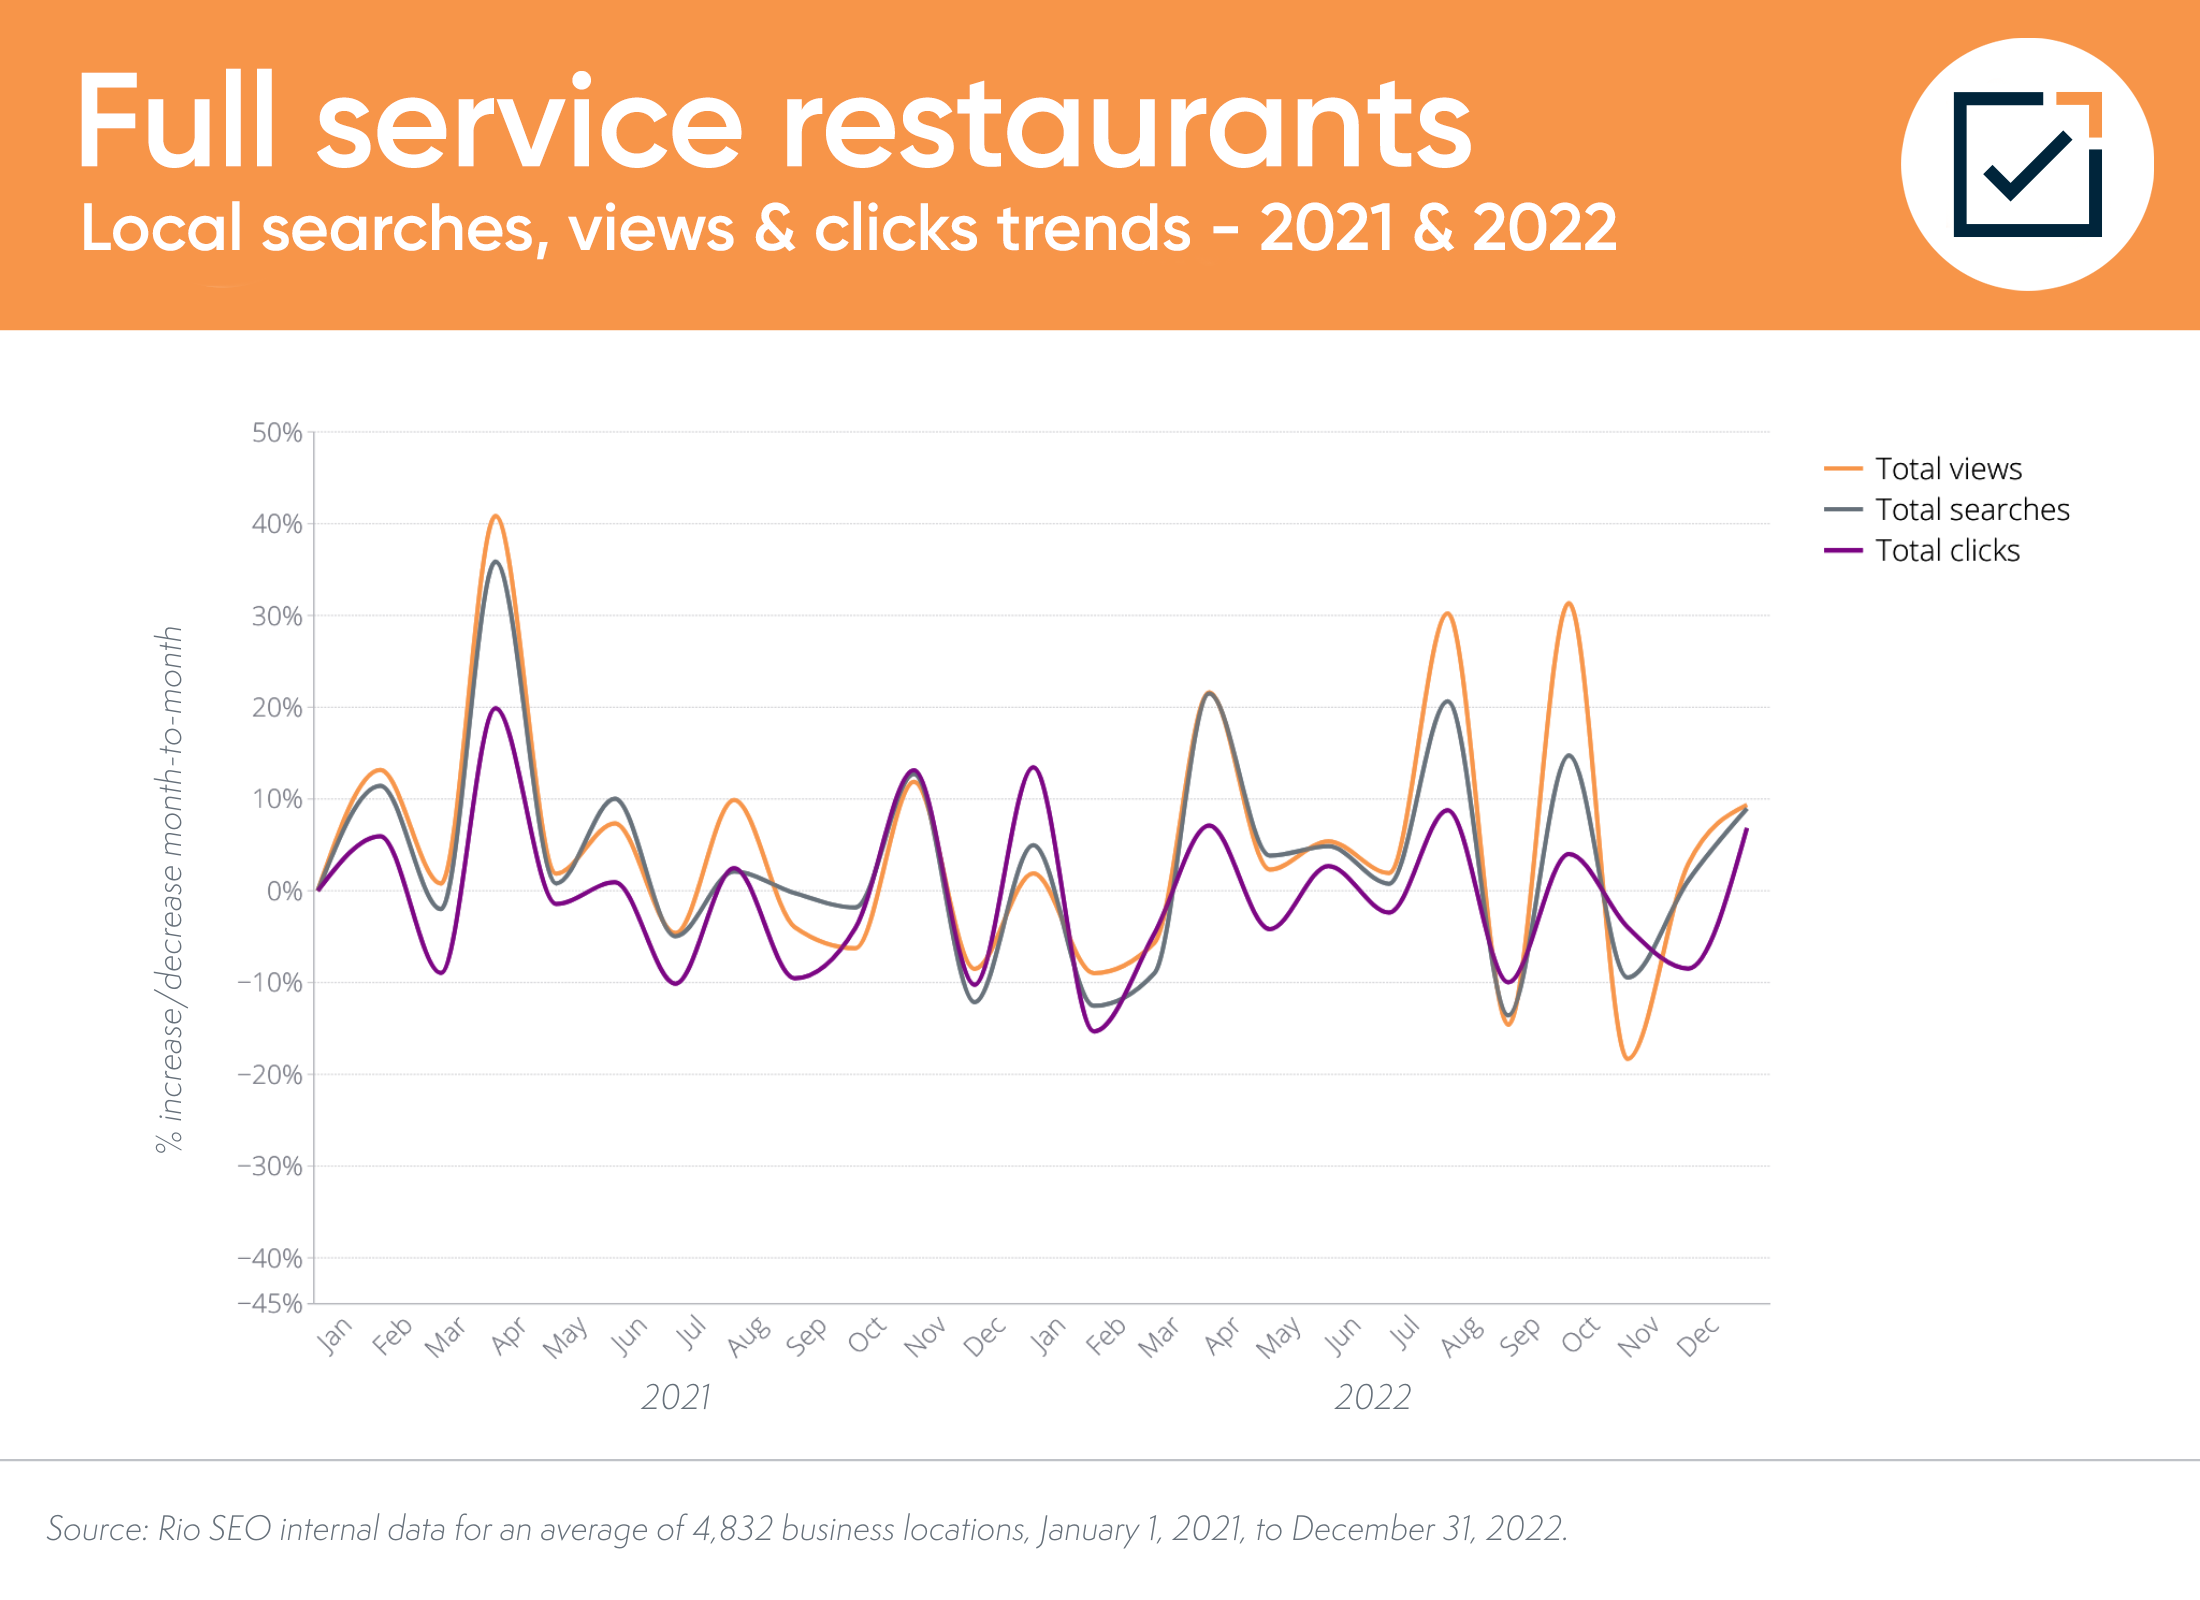 lokalne trendy wyszukiwania i konwersji restauracji z pełnym zakresem usług